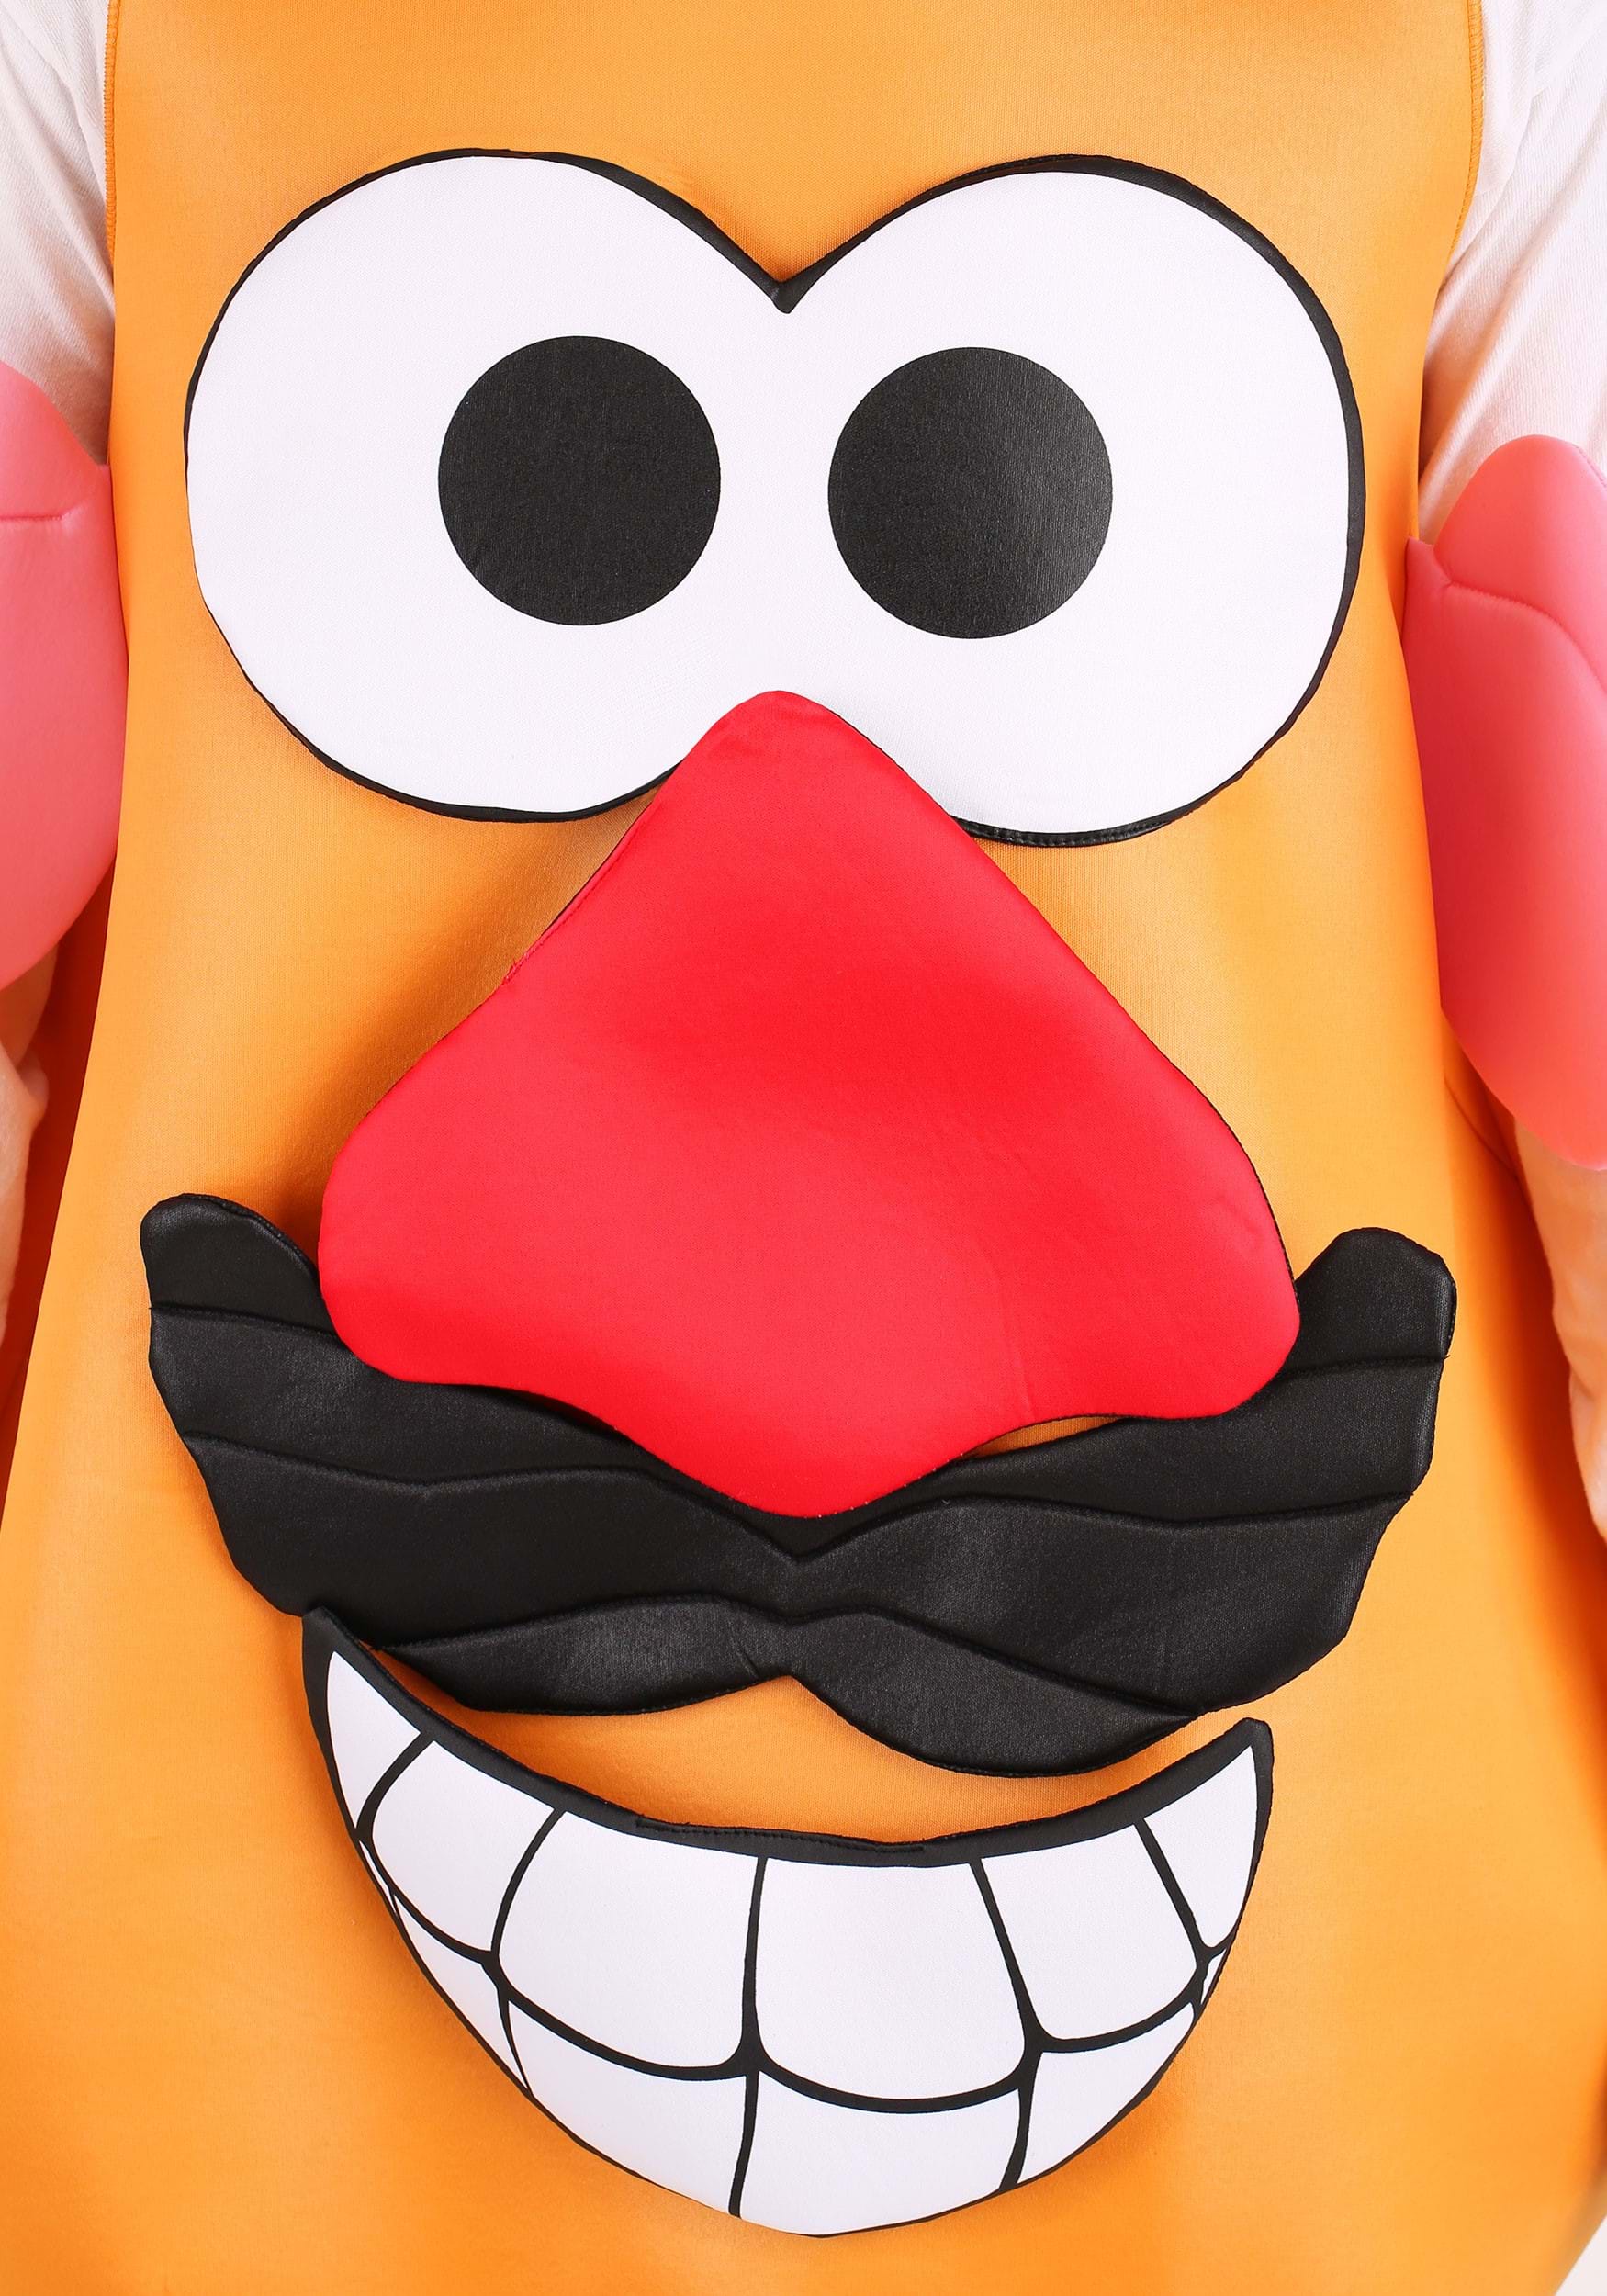 Mr Potato Head Inflatable Adult Costume